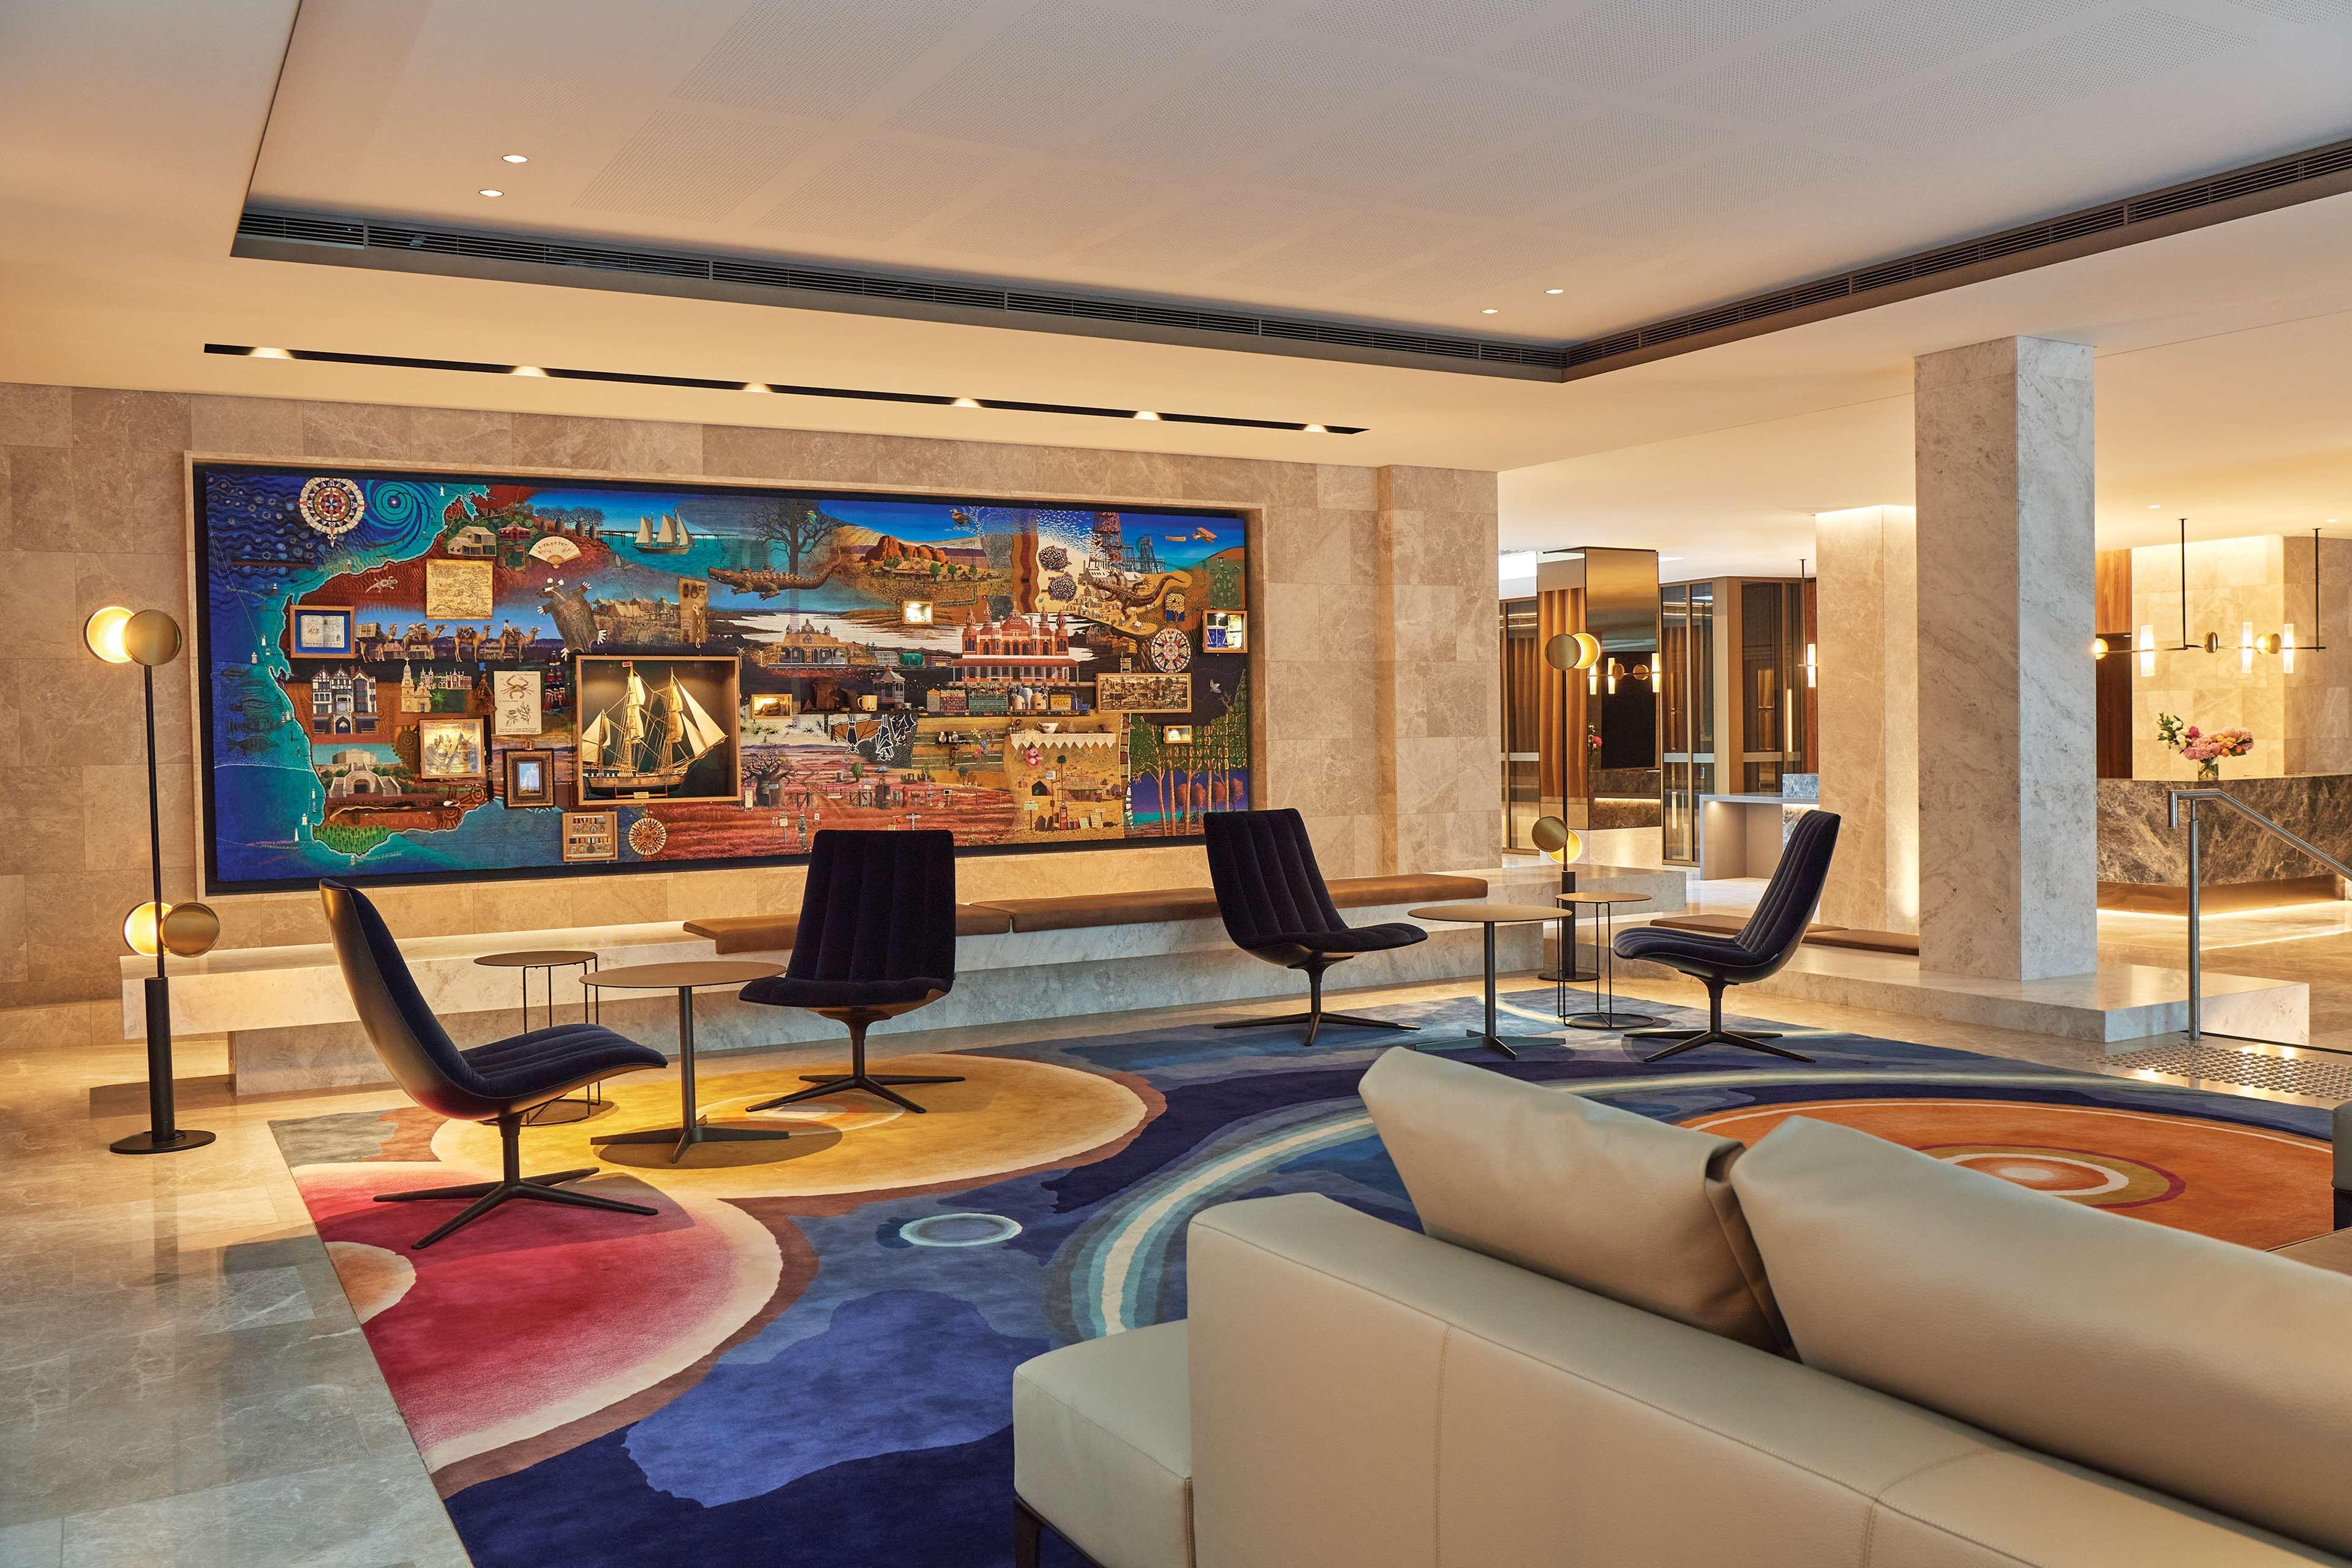 Parmelia Hilton Perth Hotel Esterno foto